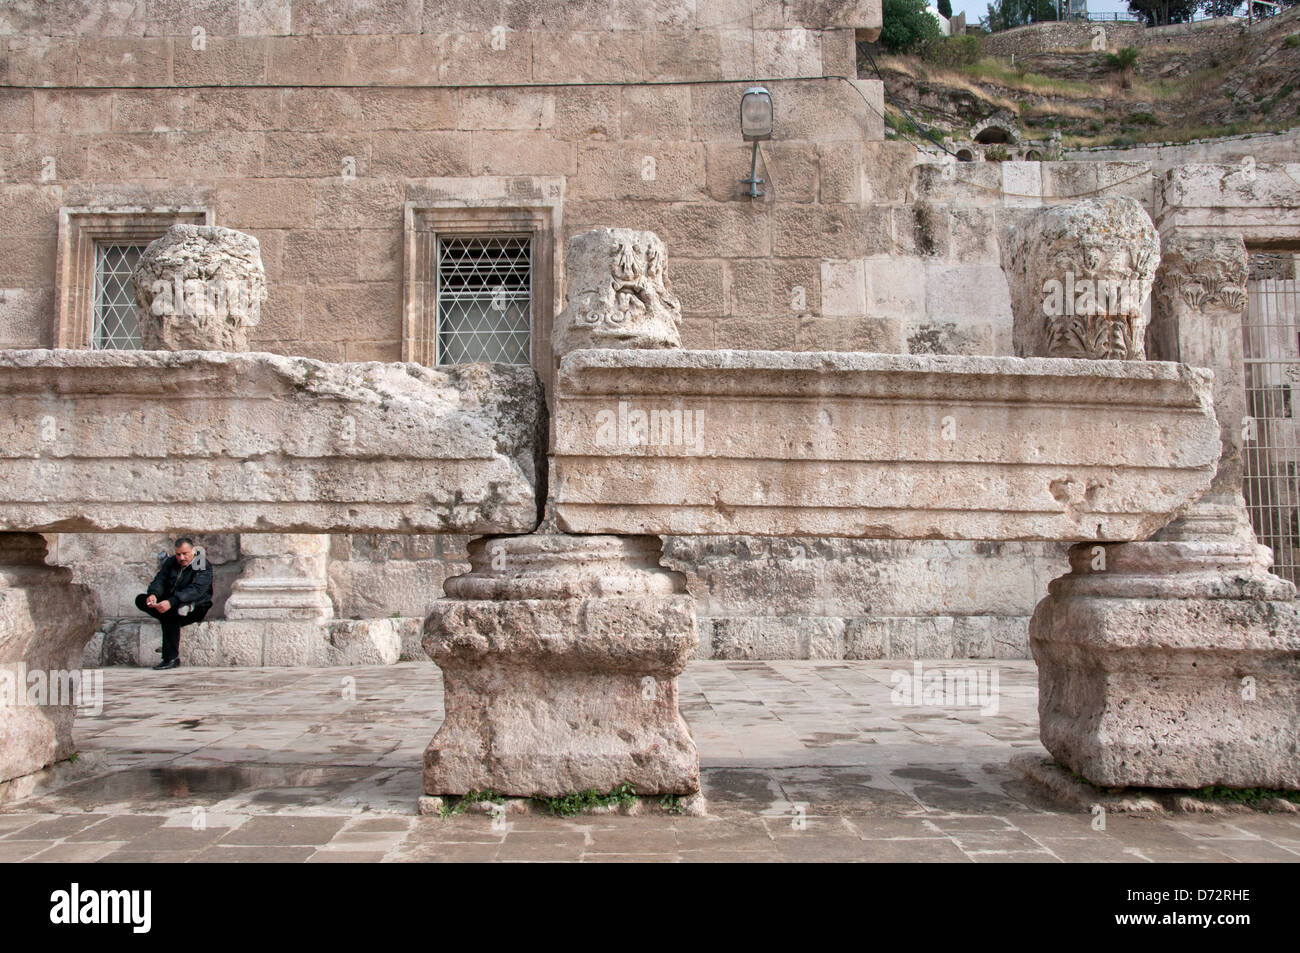 La Jordanie, Amman. L'amphithéâtre romain Banque D'Images